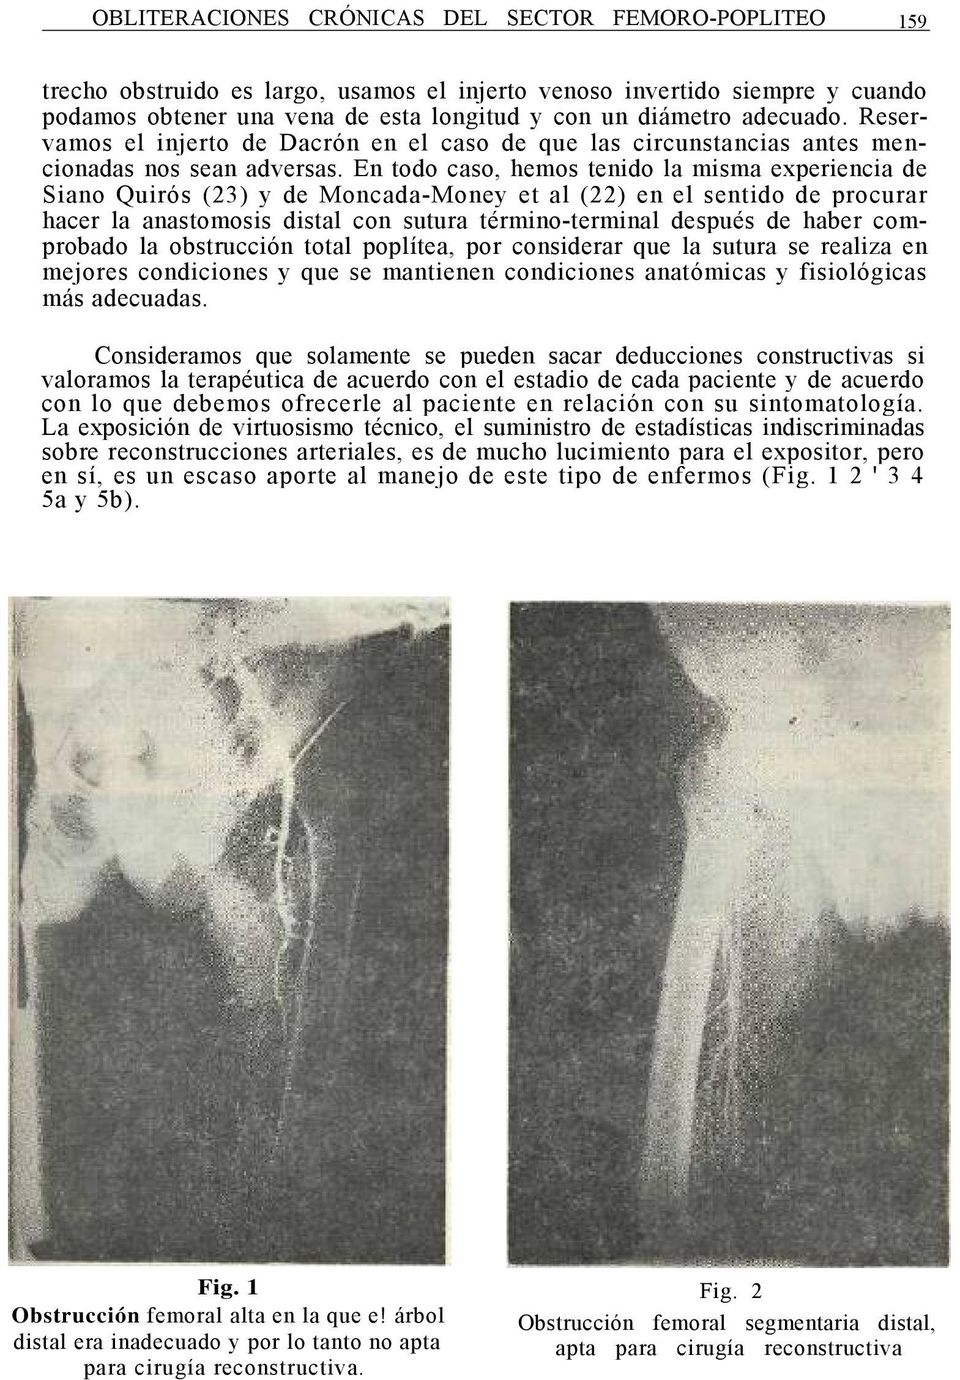 En todo caso, hemos tenido la misma experiencia de Siano Quirós (23) y de Moncada-Money et al (22) en el sentido de procurar hacer la anastomosis distal con sutura término-terminal después de haber